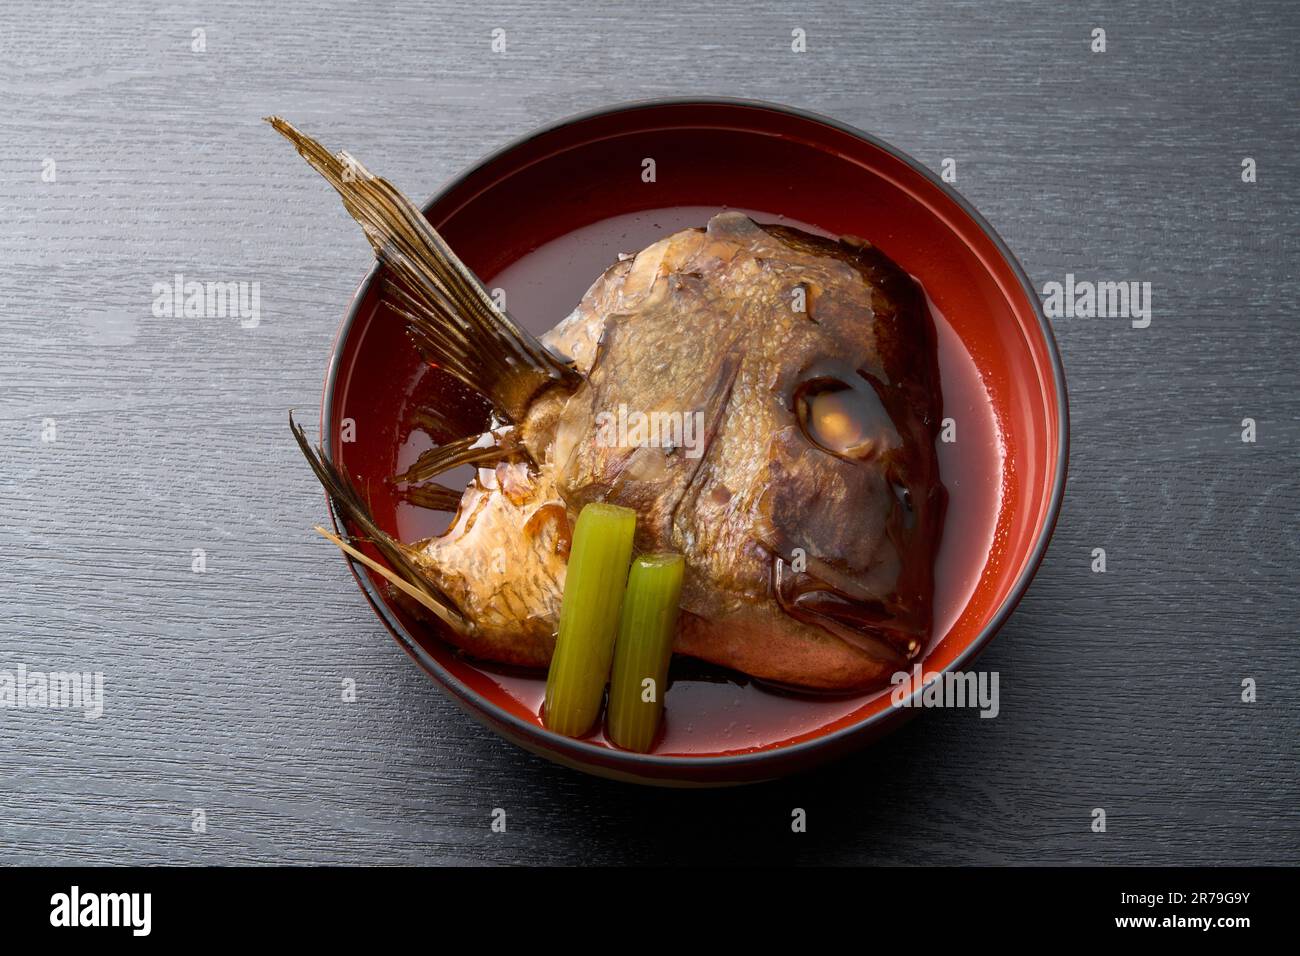 Japanisches Essen, gekochtes Meerbrassen-Köpfchen Stockfoto